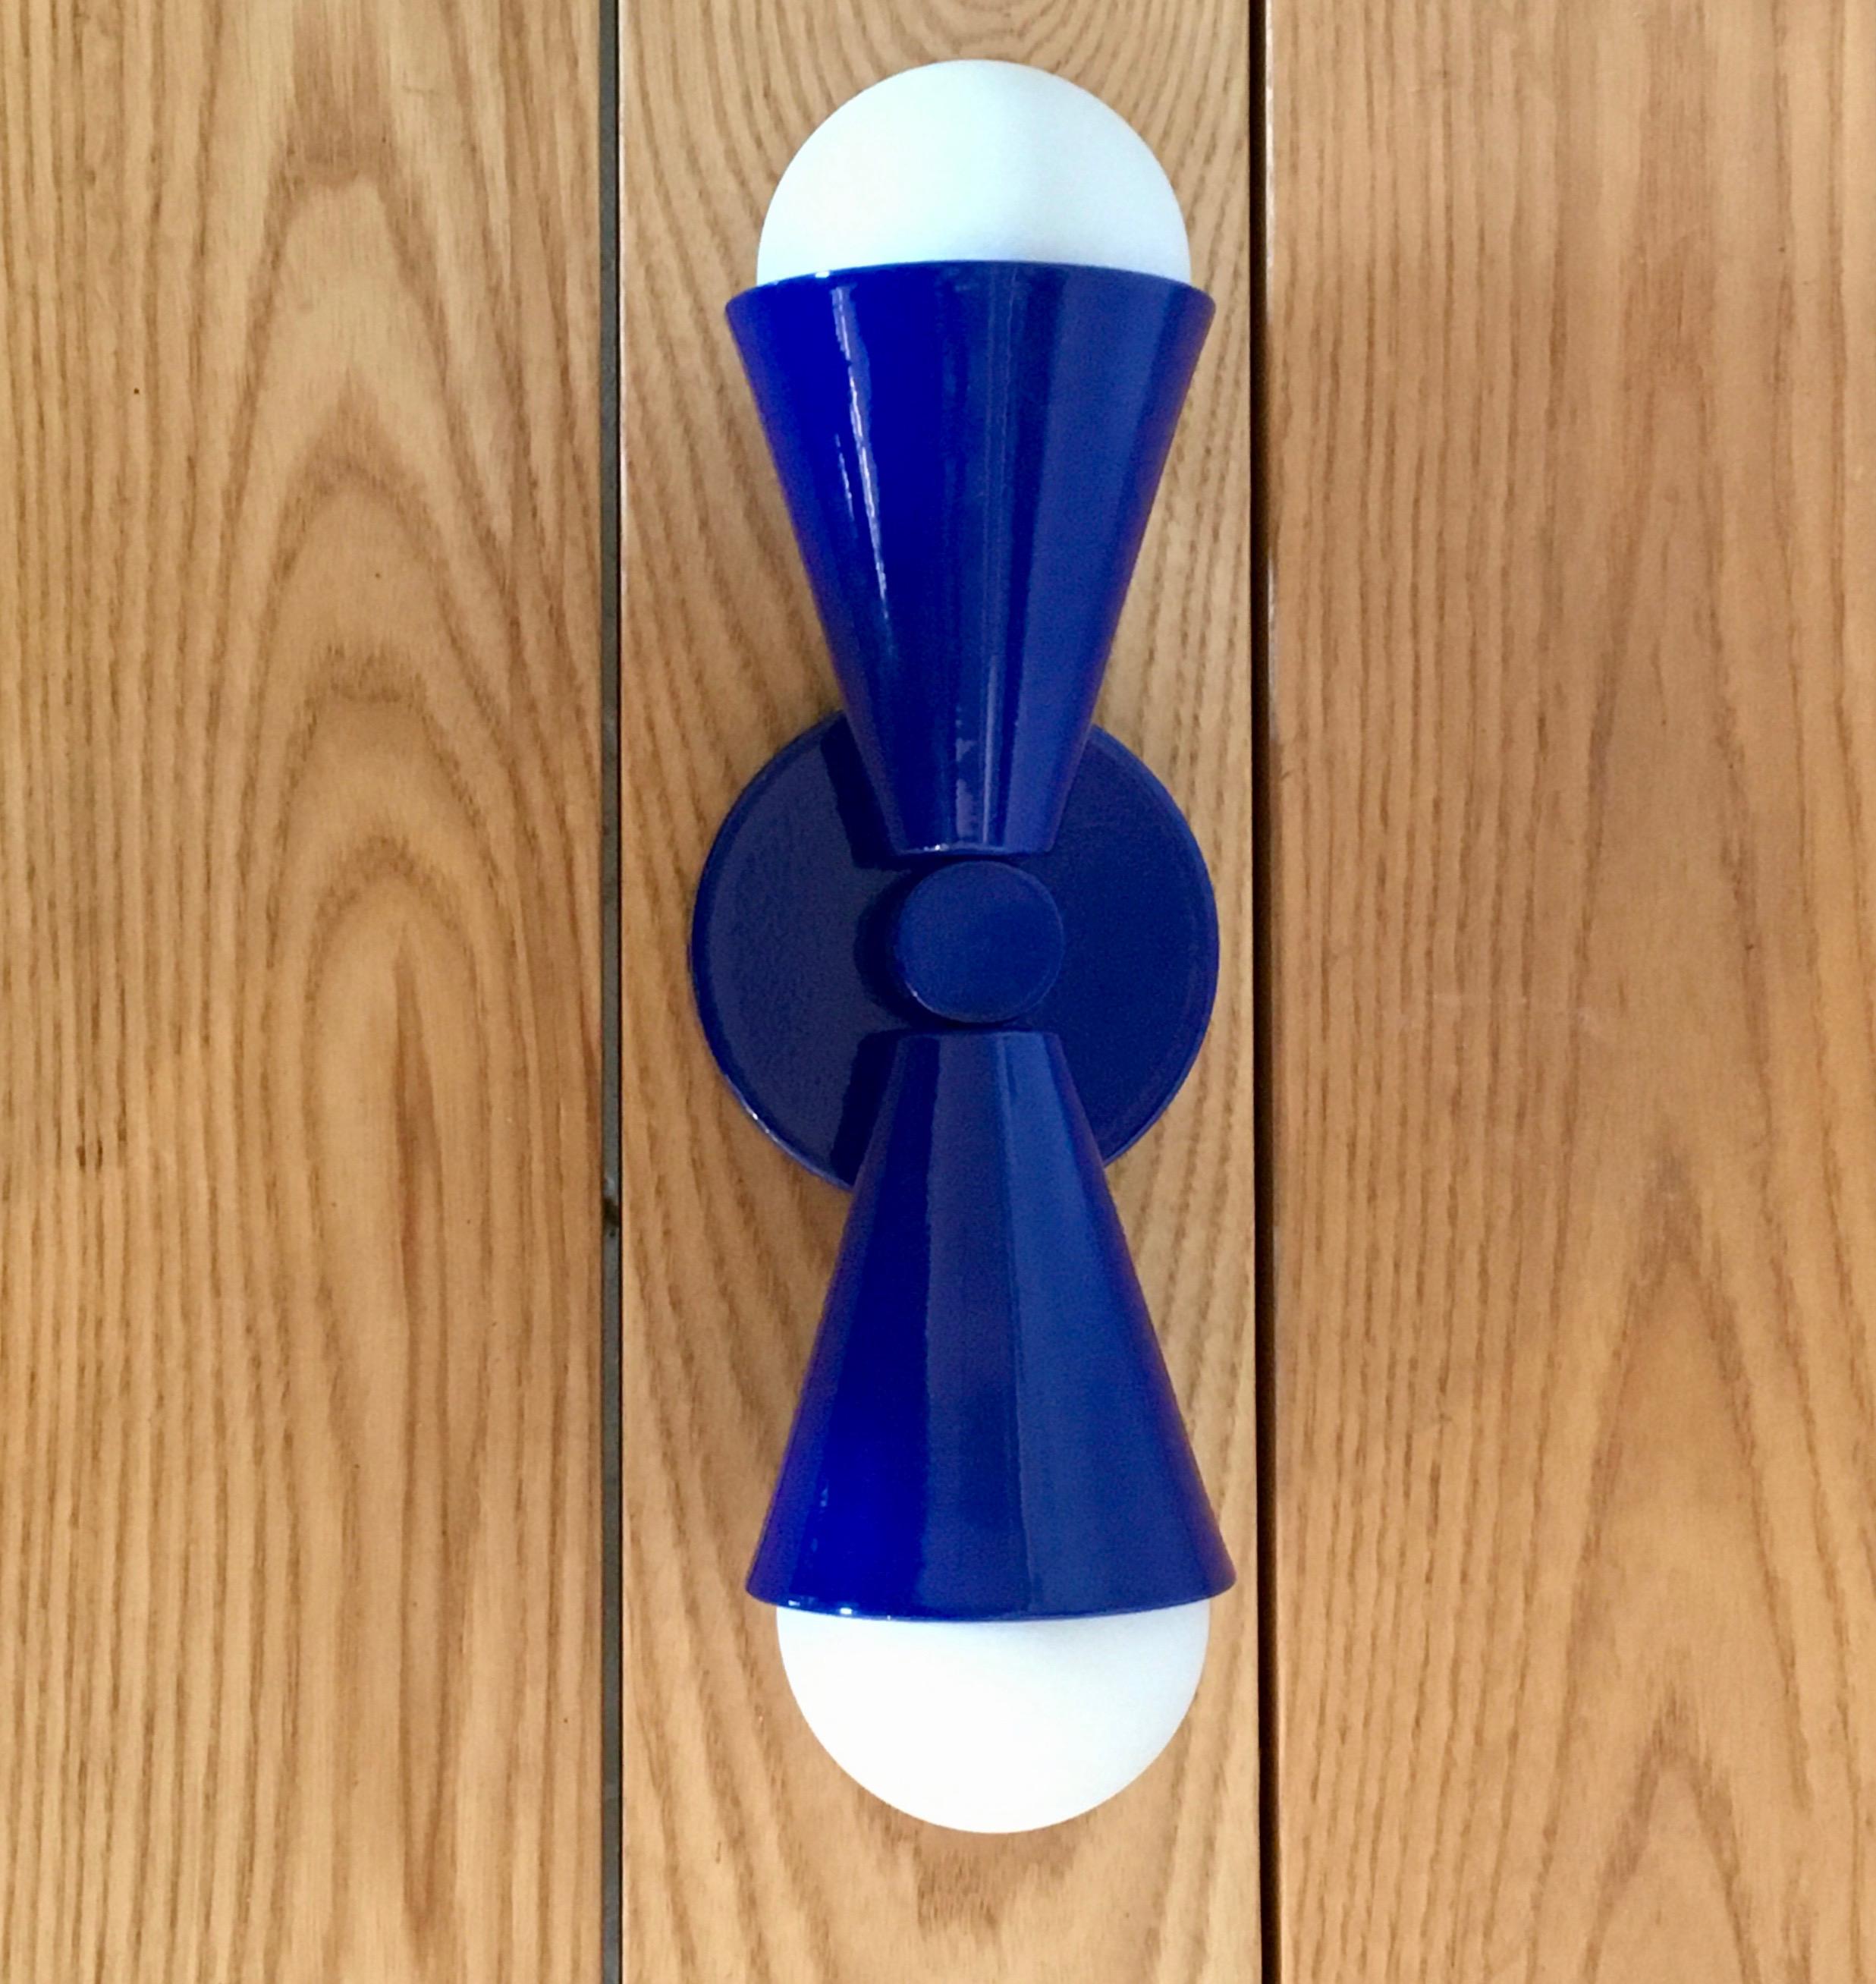 Des formes géométriques et une symétrie ludique s'ajoutent à notre applique Hourglass. Proposé en trois riches finitions en laiton ou en couleurs avec revêtement en poudre, ce luminaire est équipé de 2 douilles E26, pouvant être utilisées avec une